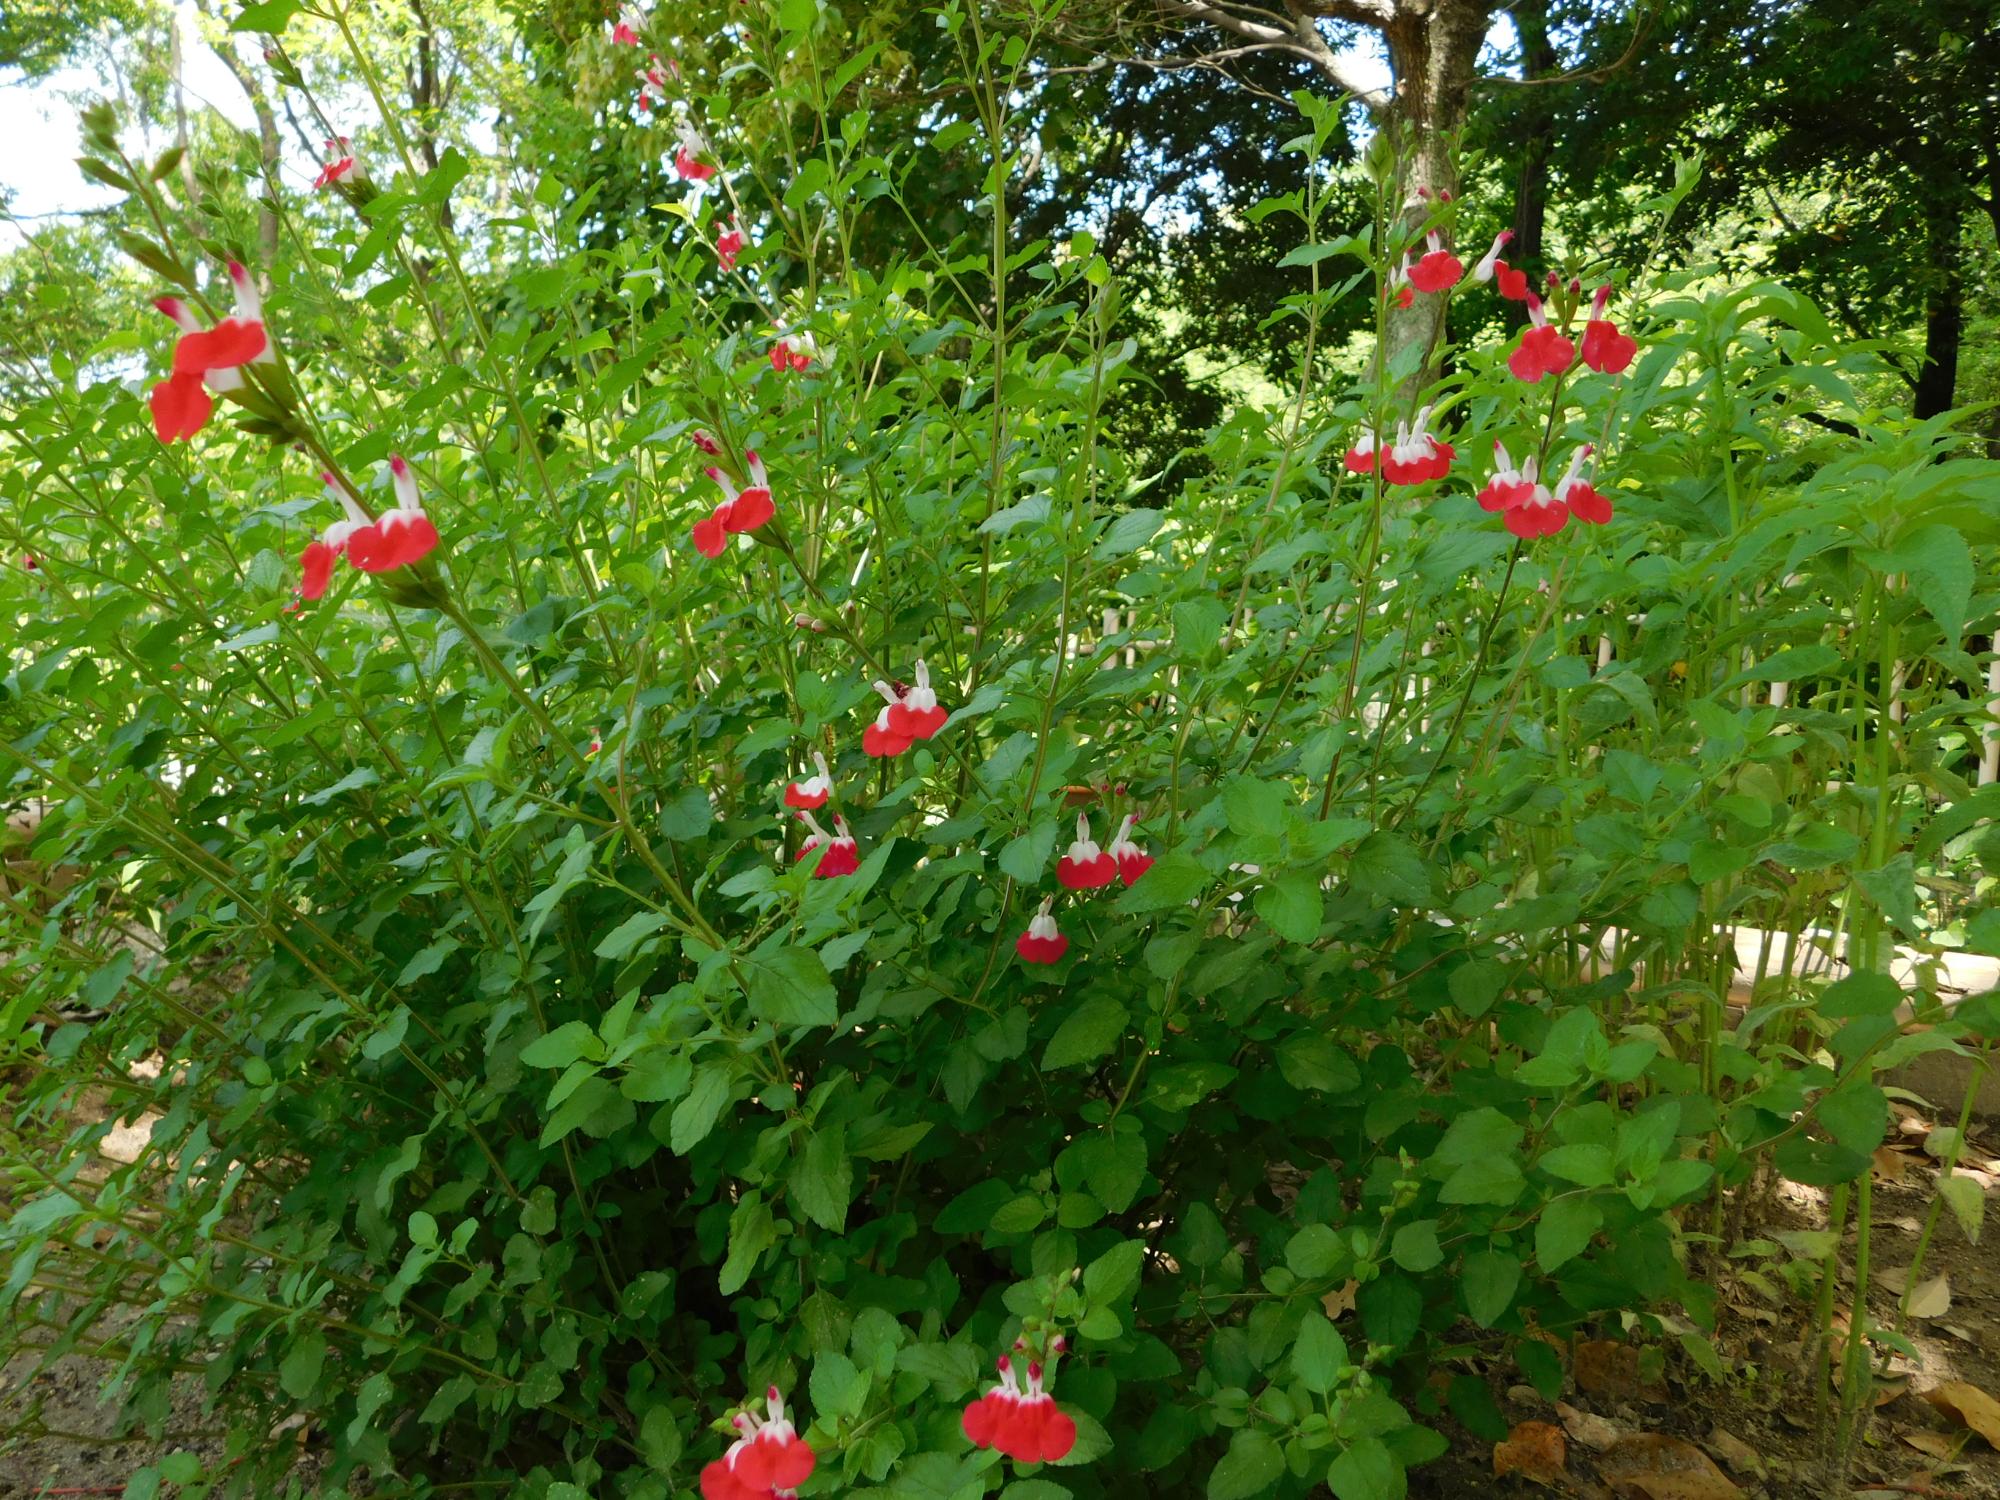 東屋の前にある「セージ園」の中で見つけたチェリーセージのかわいい花です。セージは、ハーブの一種です。